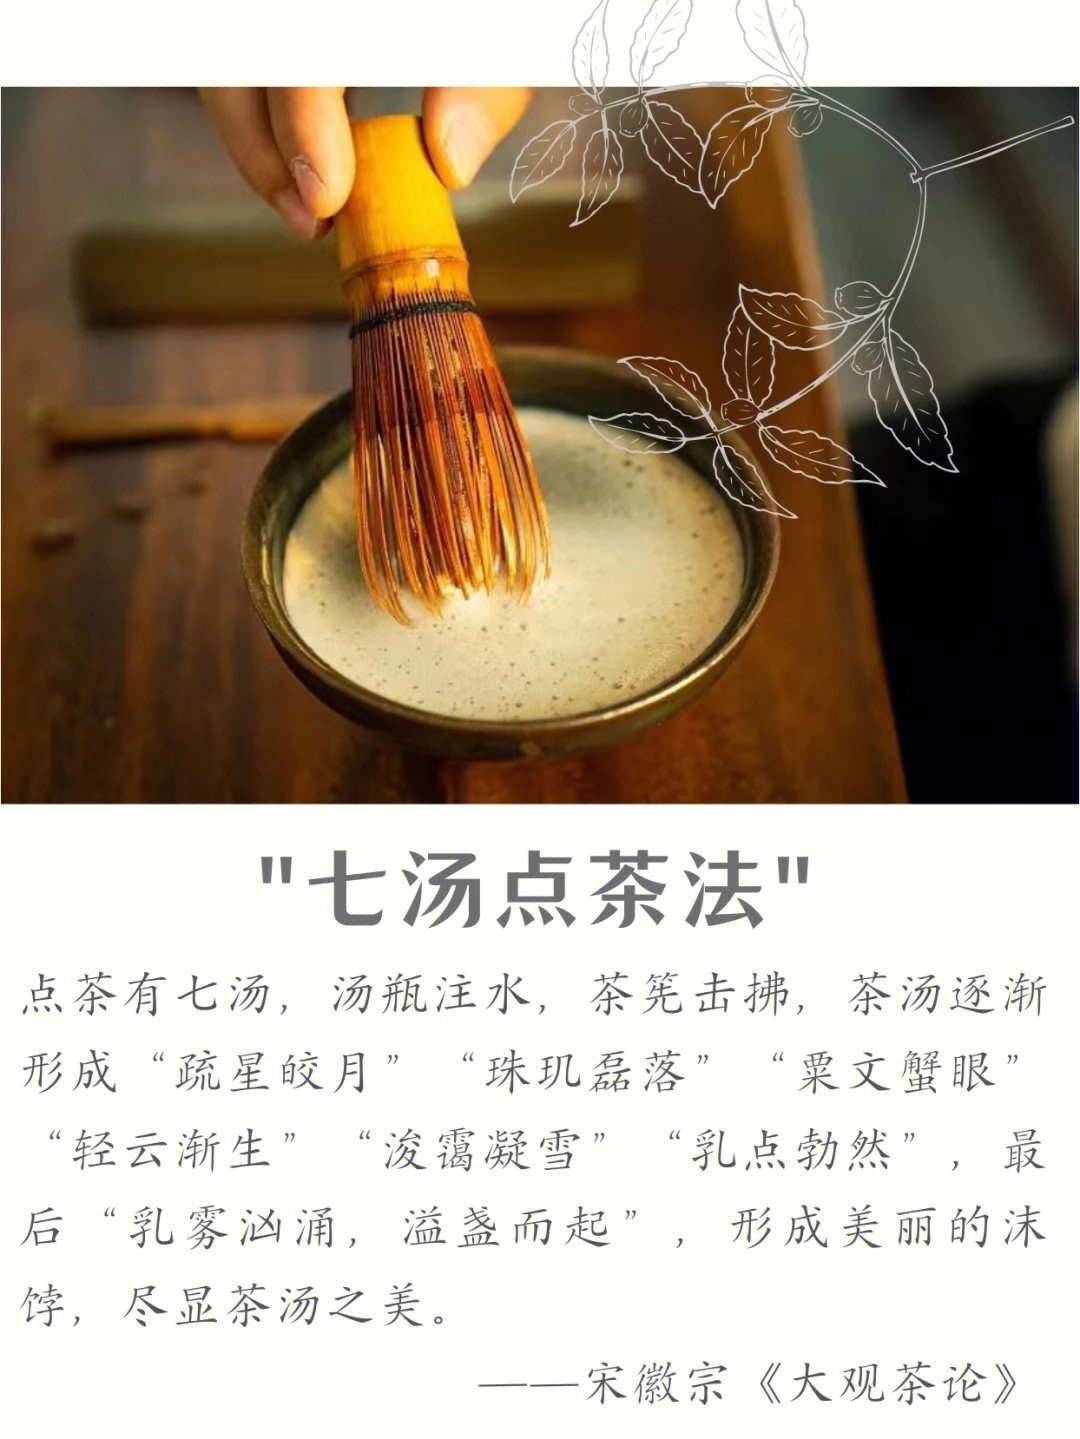 9494【什么是点茶】将热水倒在细密的茶粉上